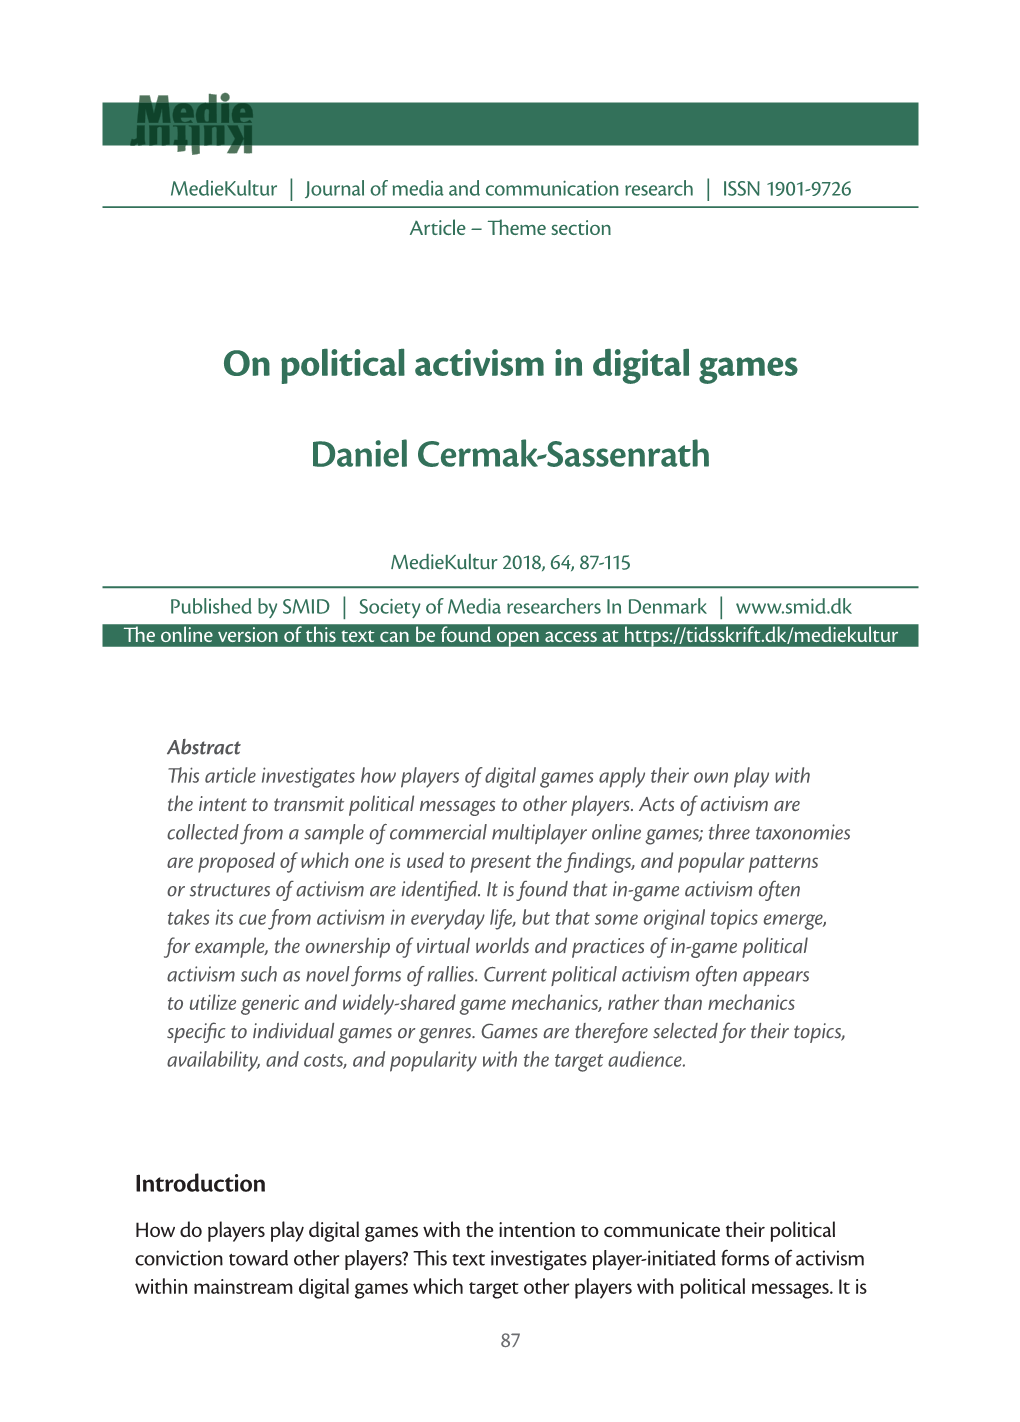 On Political Activism in Digital Games Daniel Cermak